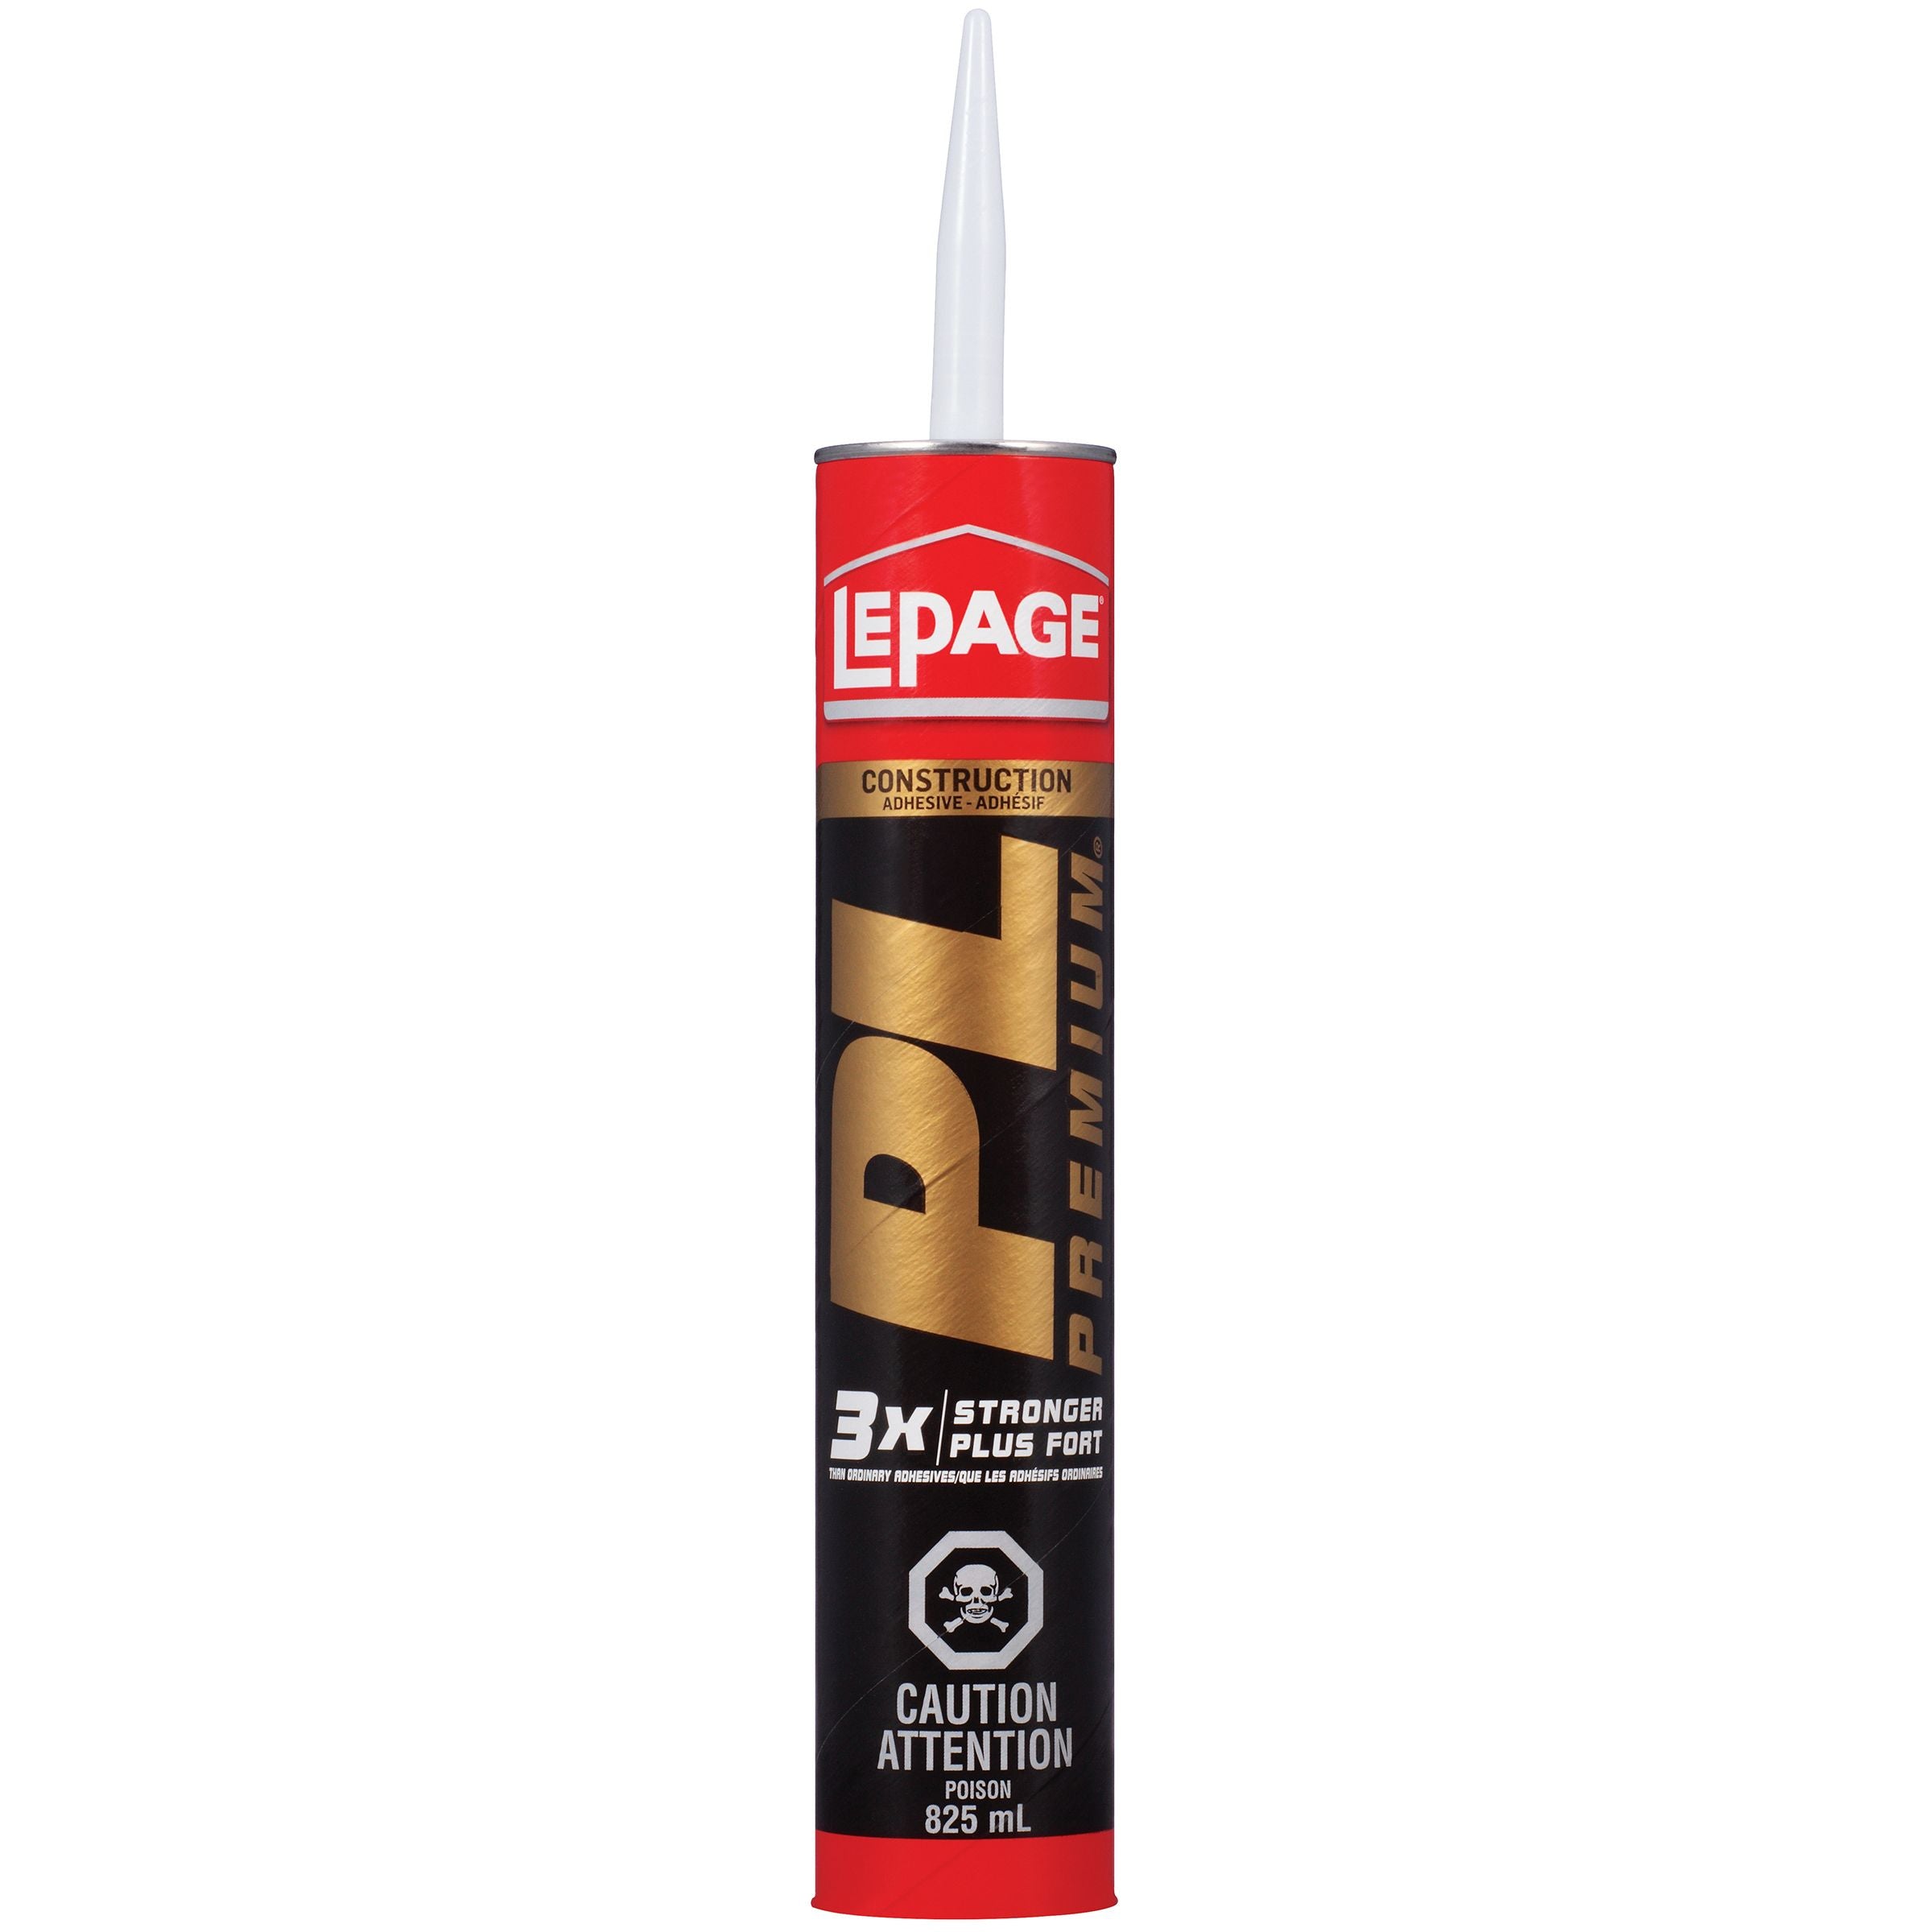 LePage PL Premium Adhesive, Tan, 825 ml Cartridge, Pack of 1